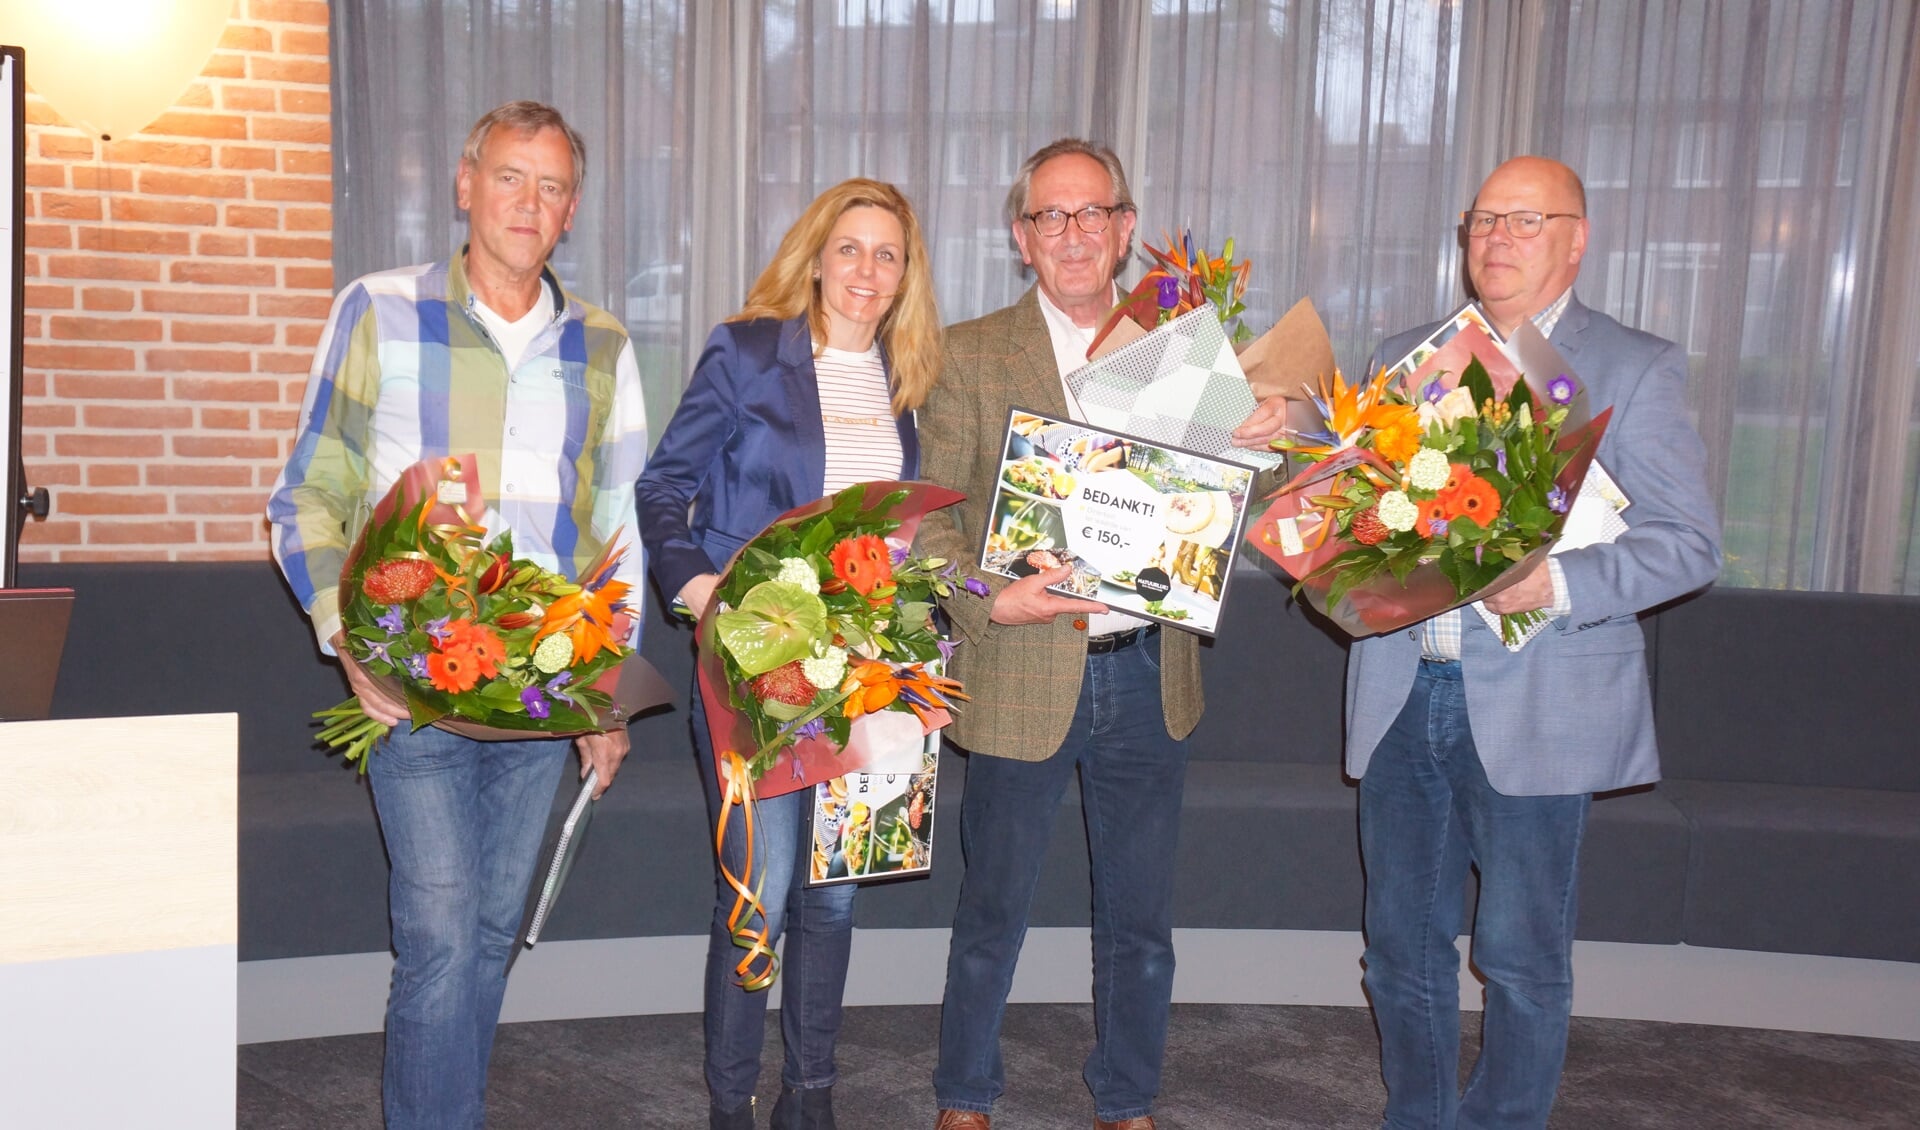 v.l.n.r.: Jan de Werdt, Marlies van Gerwen, Pieter van de Kamp en Tonnie Heijmans.